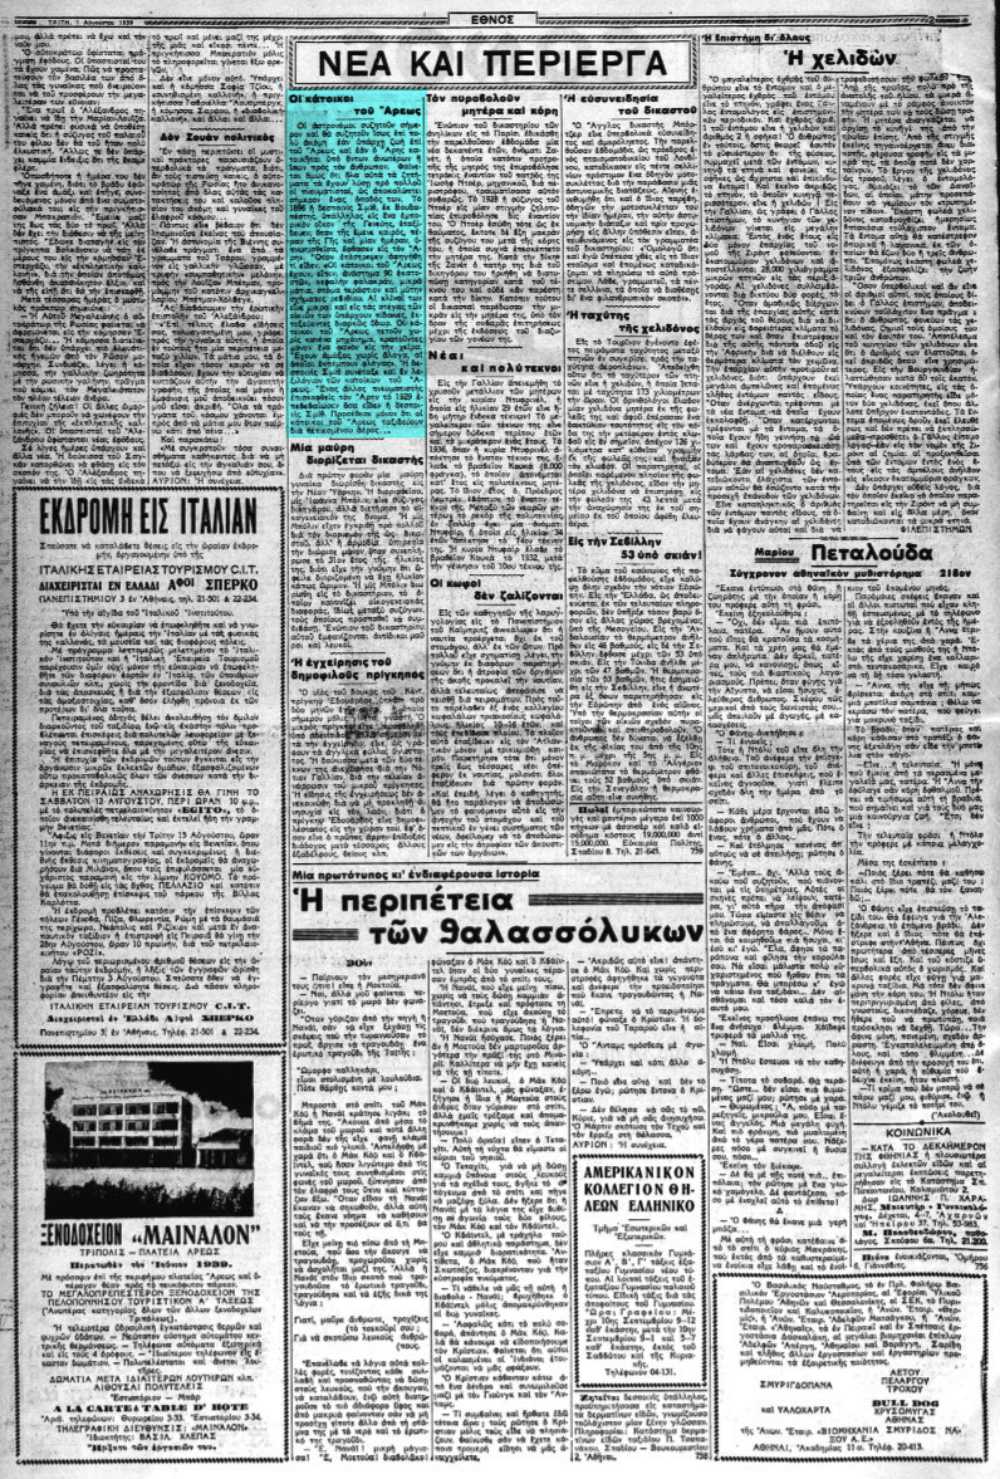 Το άρθρο, όπως δημοσιεύθηκε στην εφημερίδα "ΕΘΝΟΣ", στις 01/08/1939